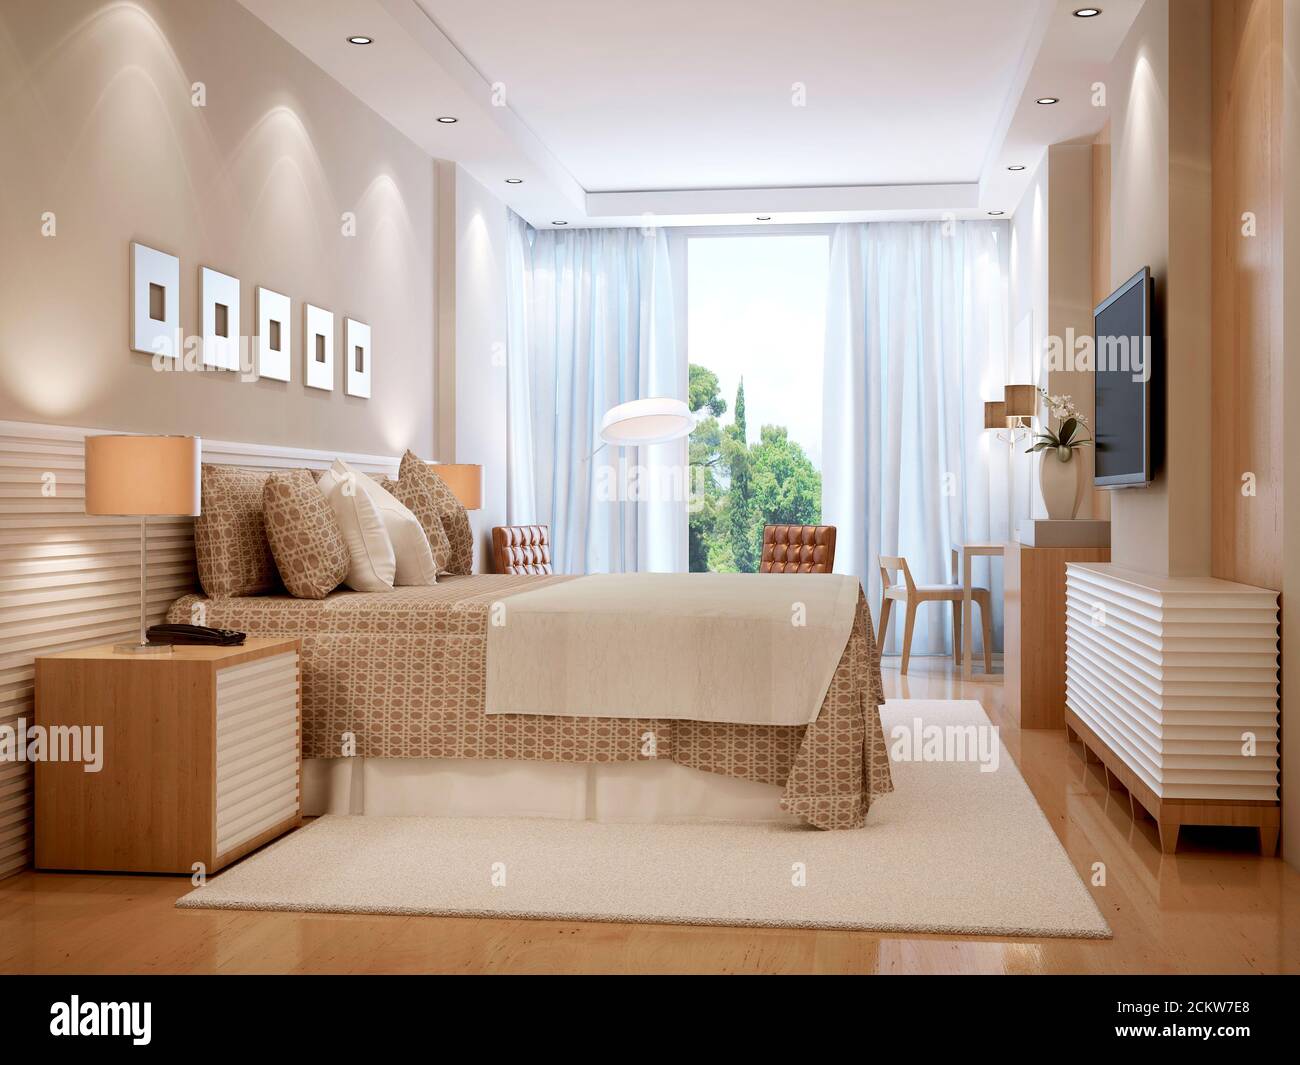 Bright bedroom scandinavian style. 3d render Stock Photo